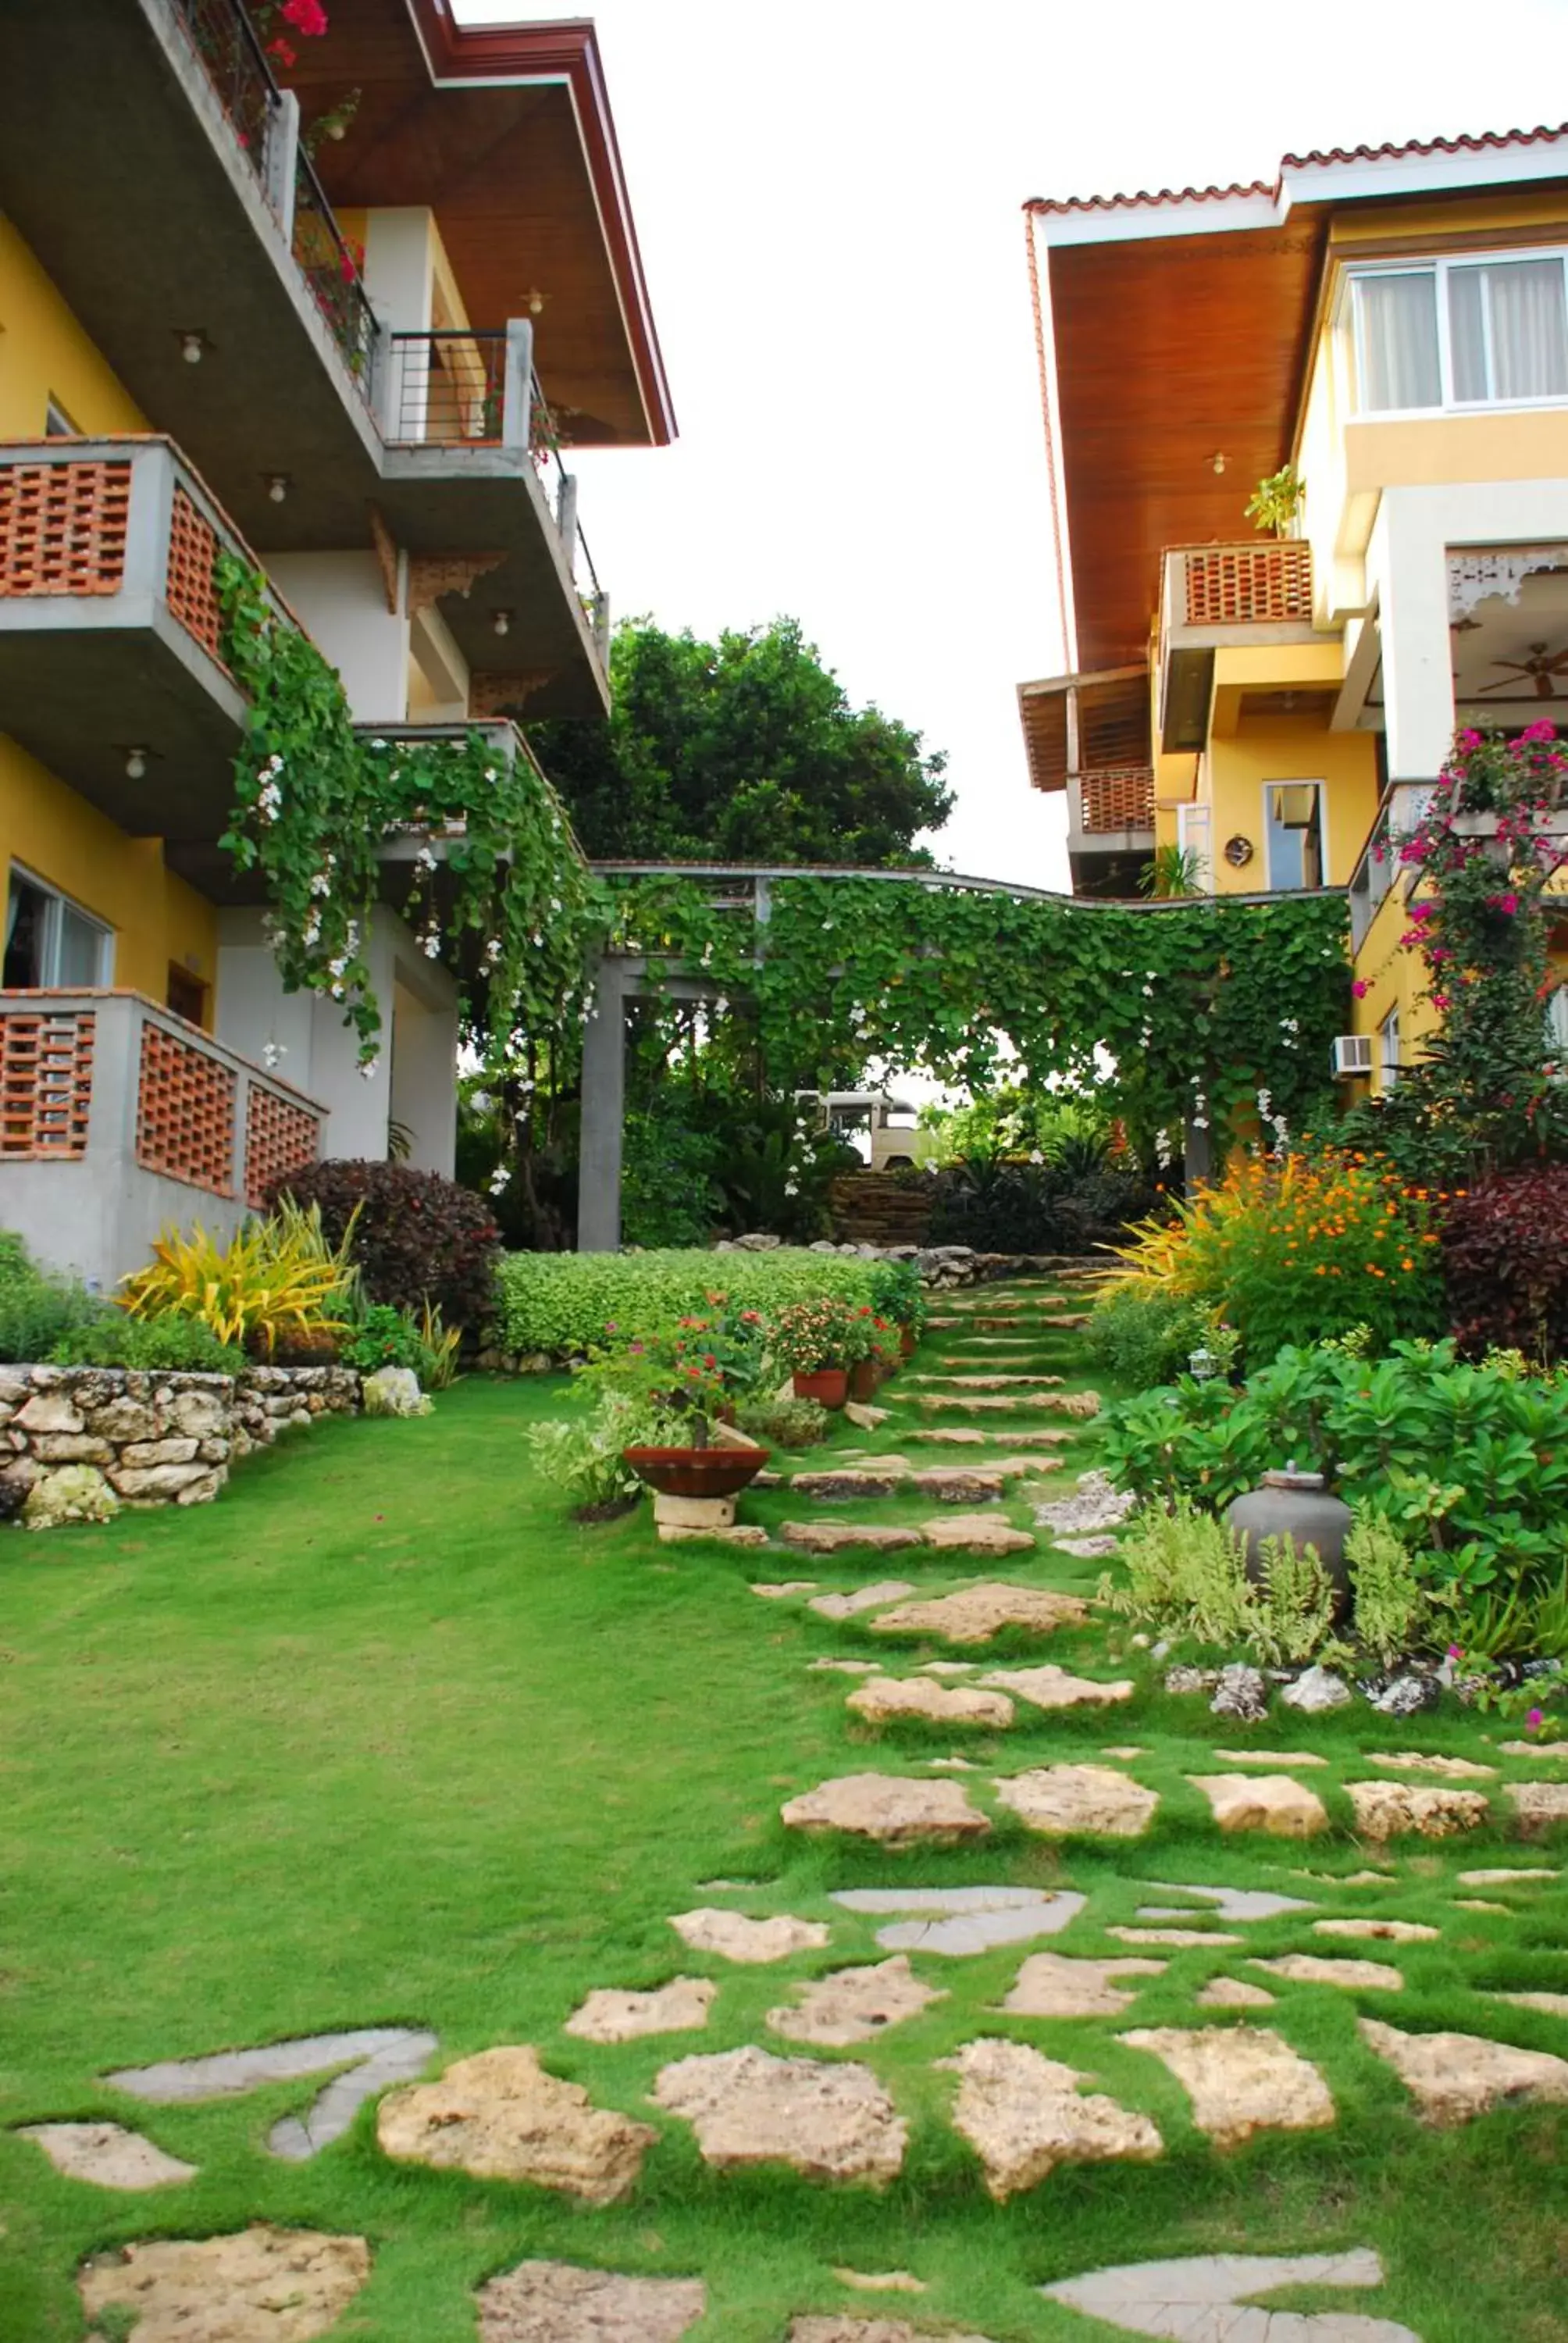 Property building, Garden in Amarela Resort